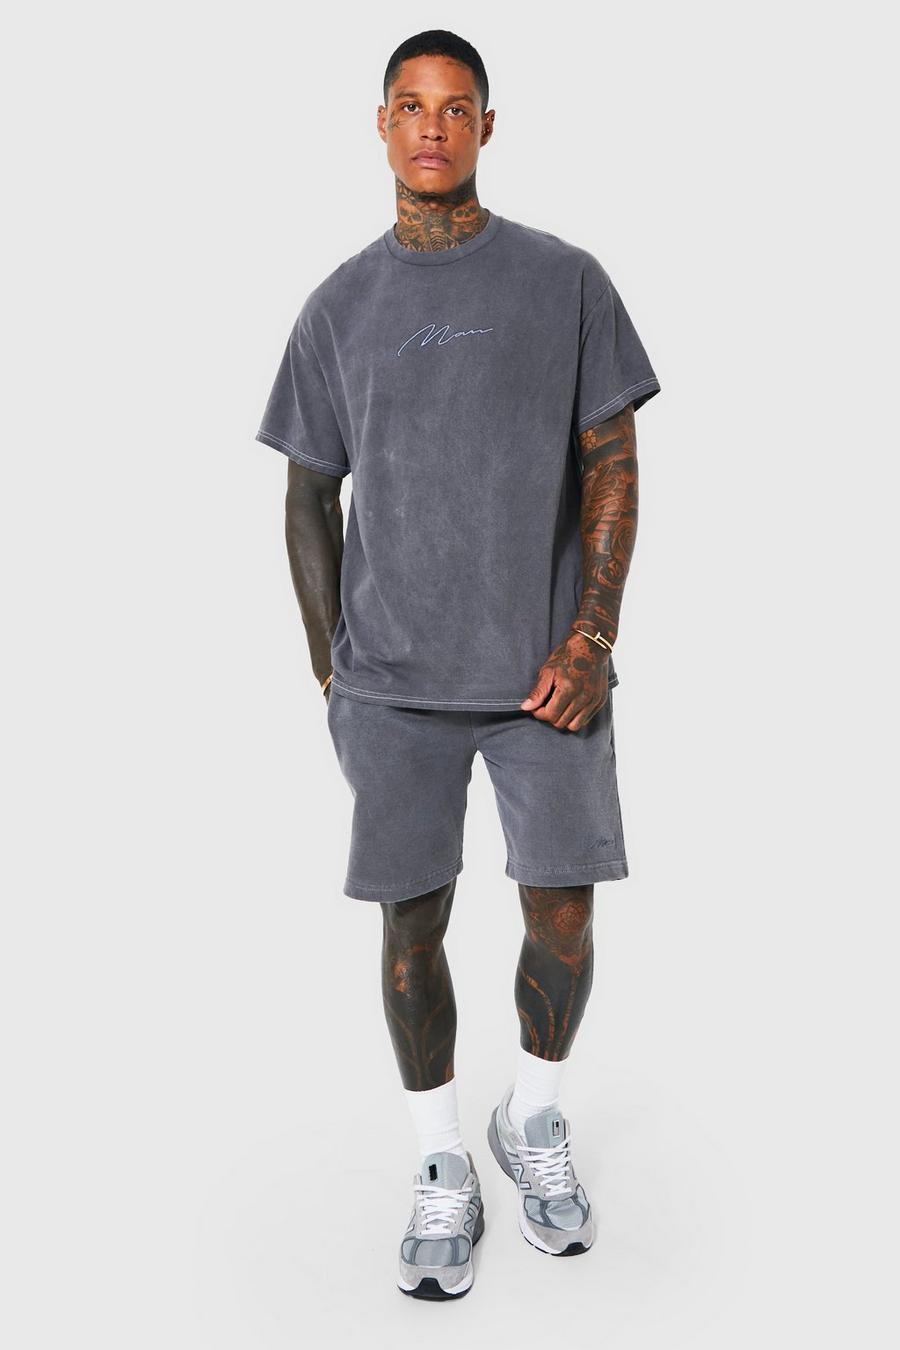 Ensemble oversize surteint t-shirt et short, Charcoal gris